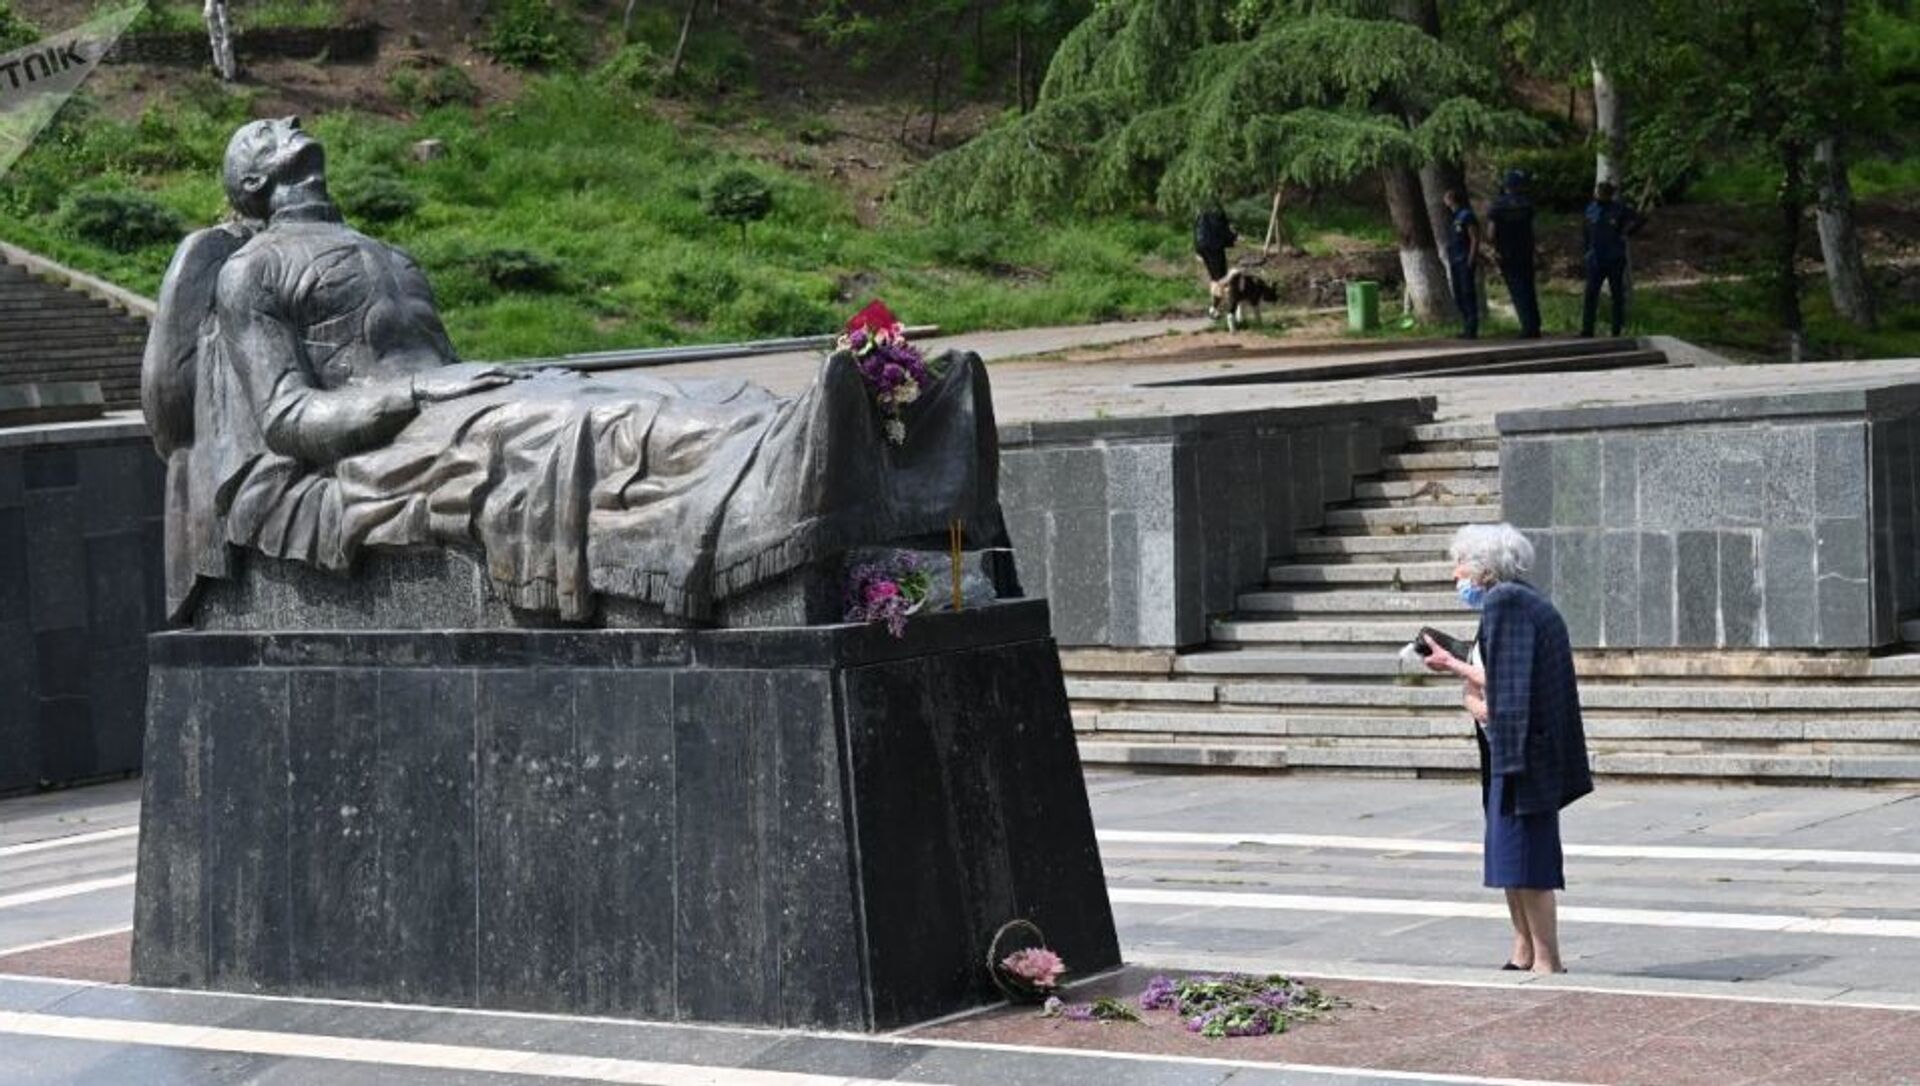 Могила Неизвестного солдата в парке Ваке в Тбилиси, Грузия 9 мая 2021 года - Sputnik Азербайджан, 1920, 09.05.2021